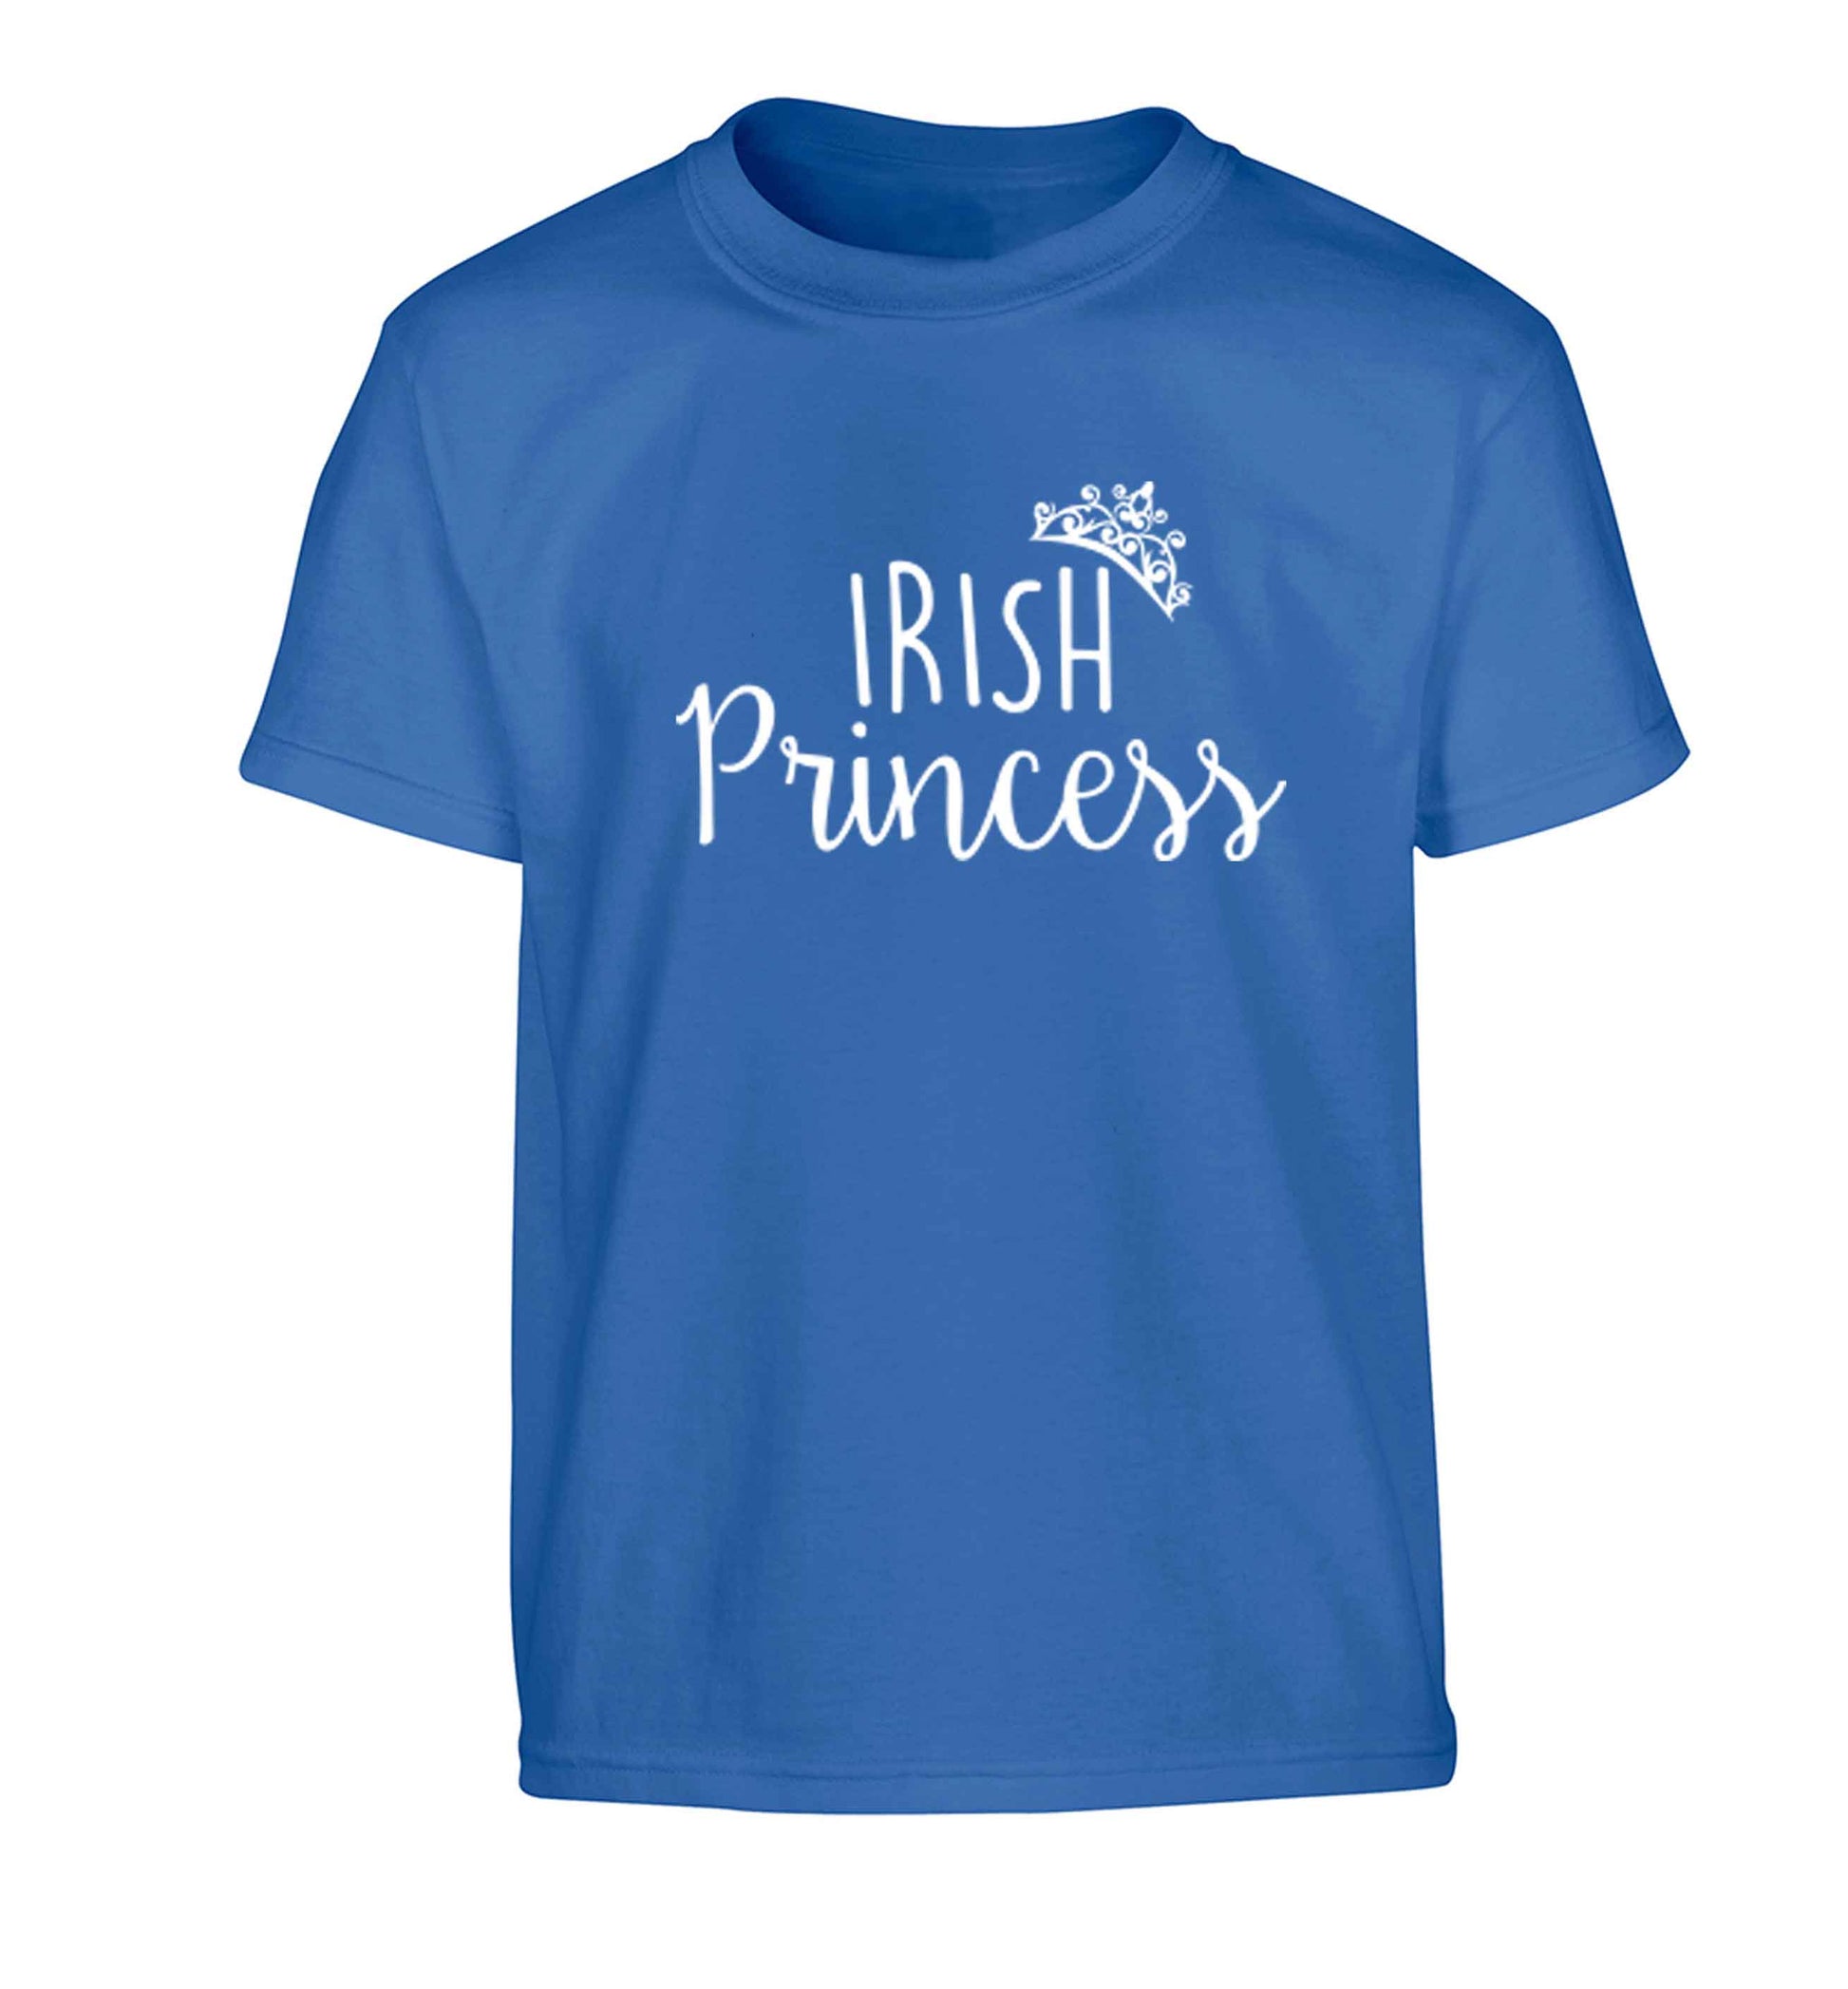 Irish princess Children's blue Tshirt 12-13 Years